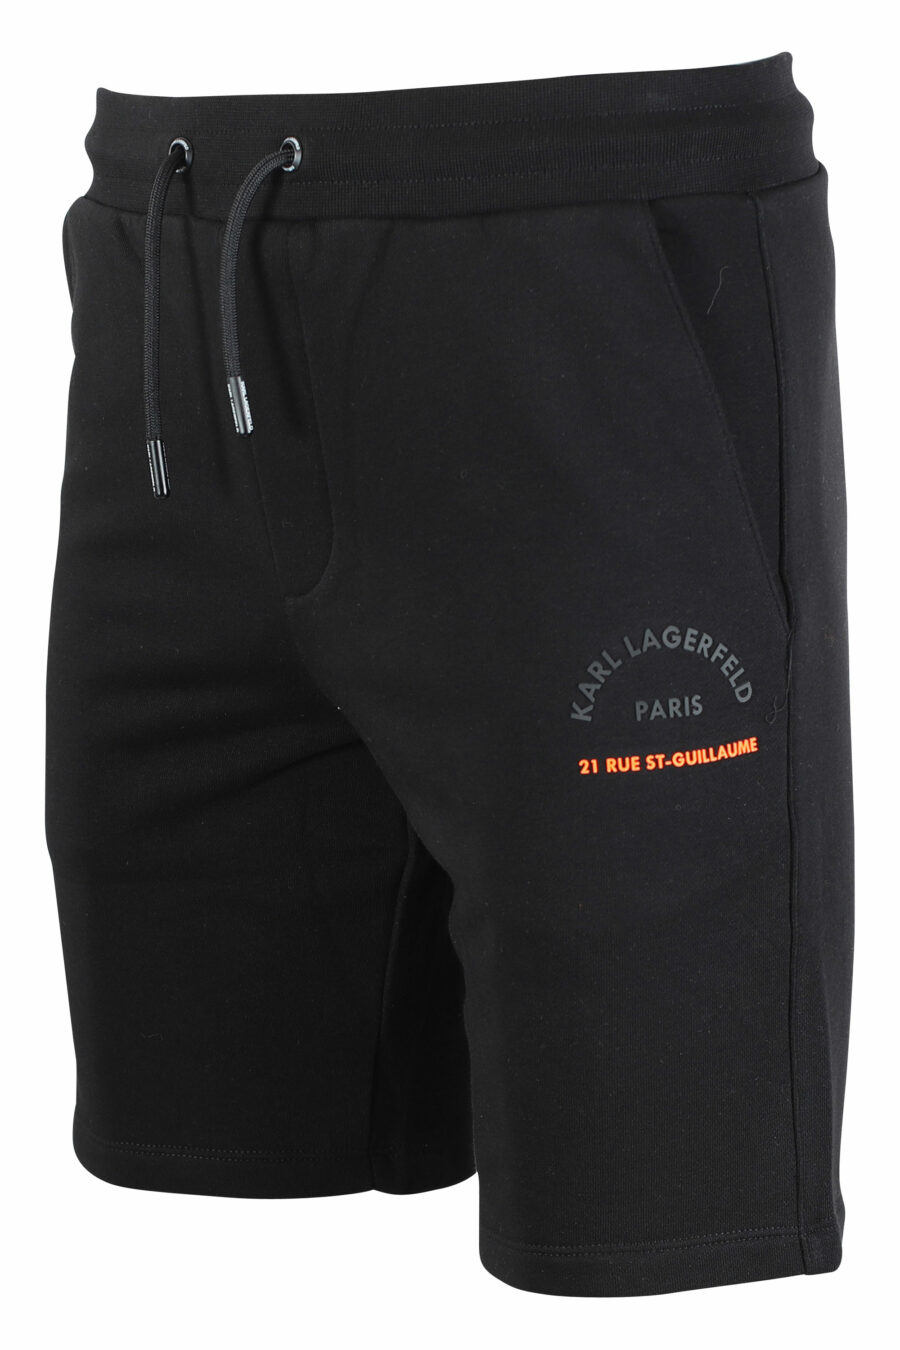 Pantalón de chándal negro corto con minilogo "rue st guillaume" - IMG 9511